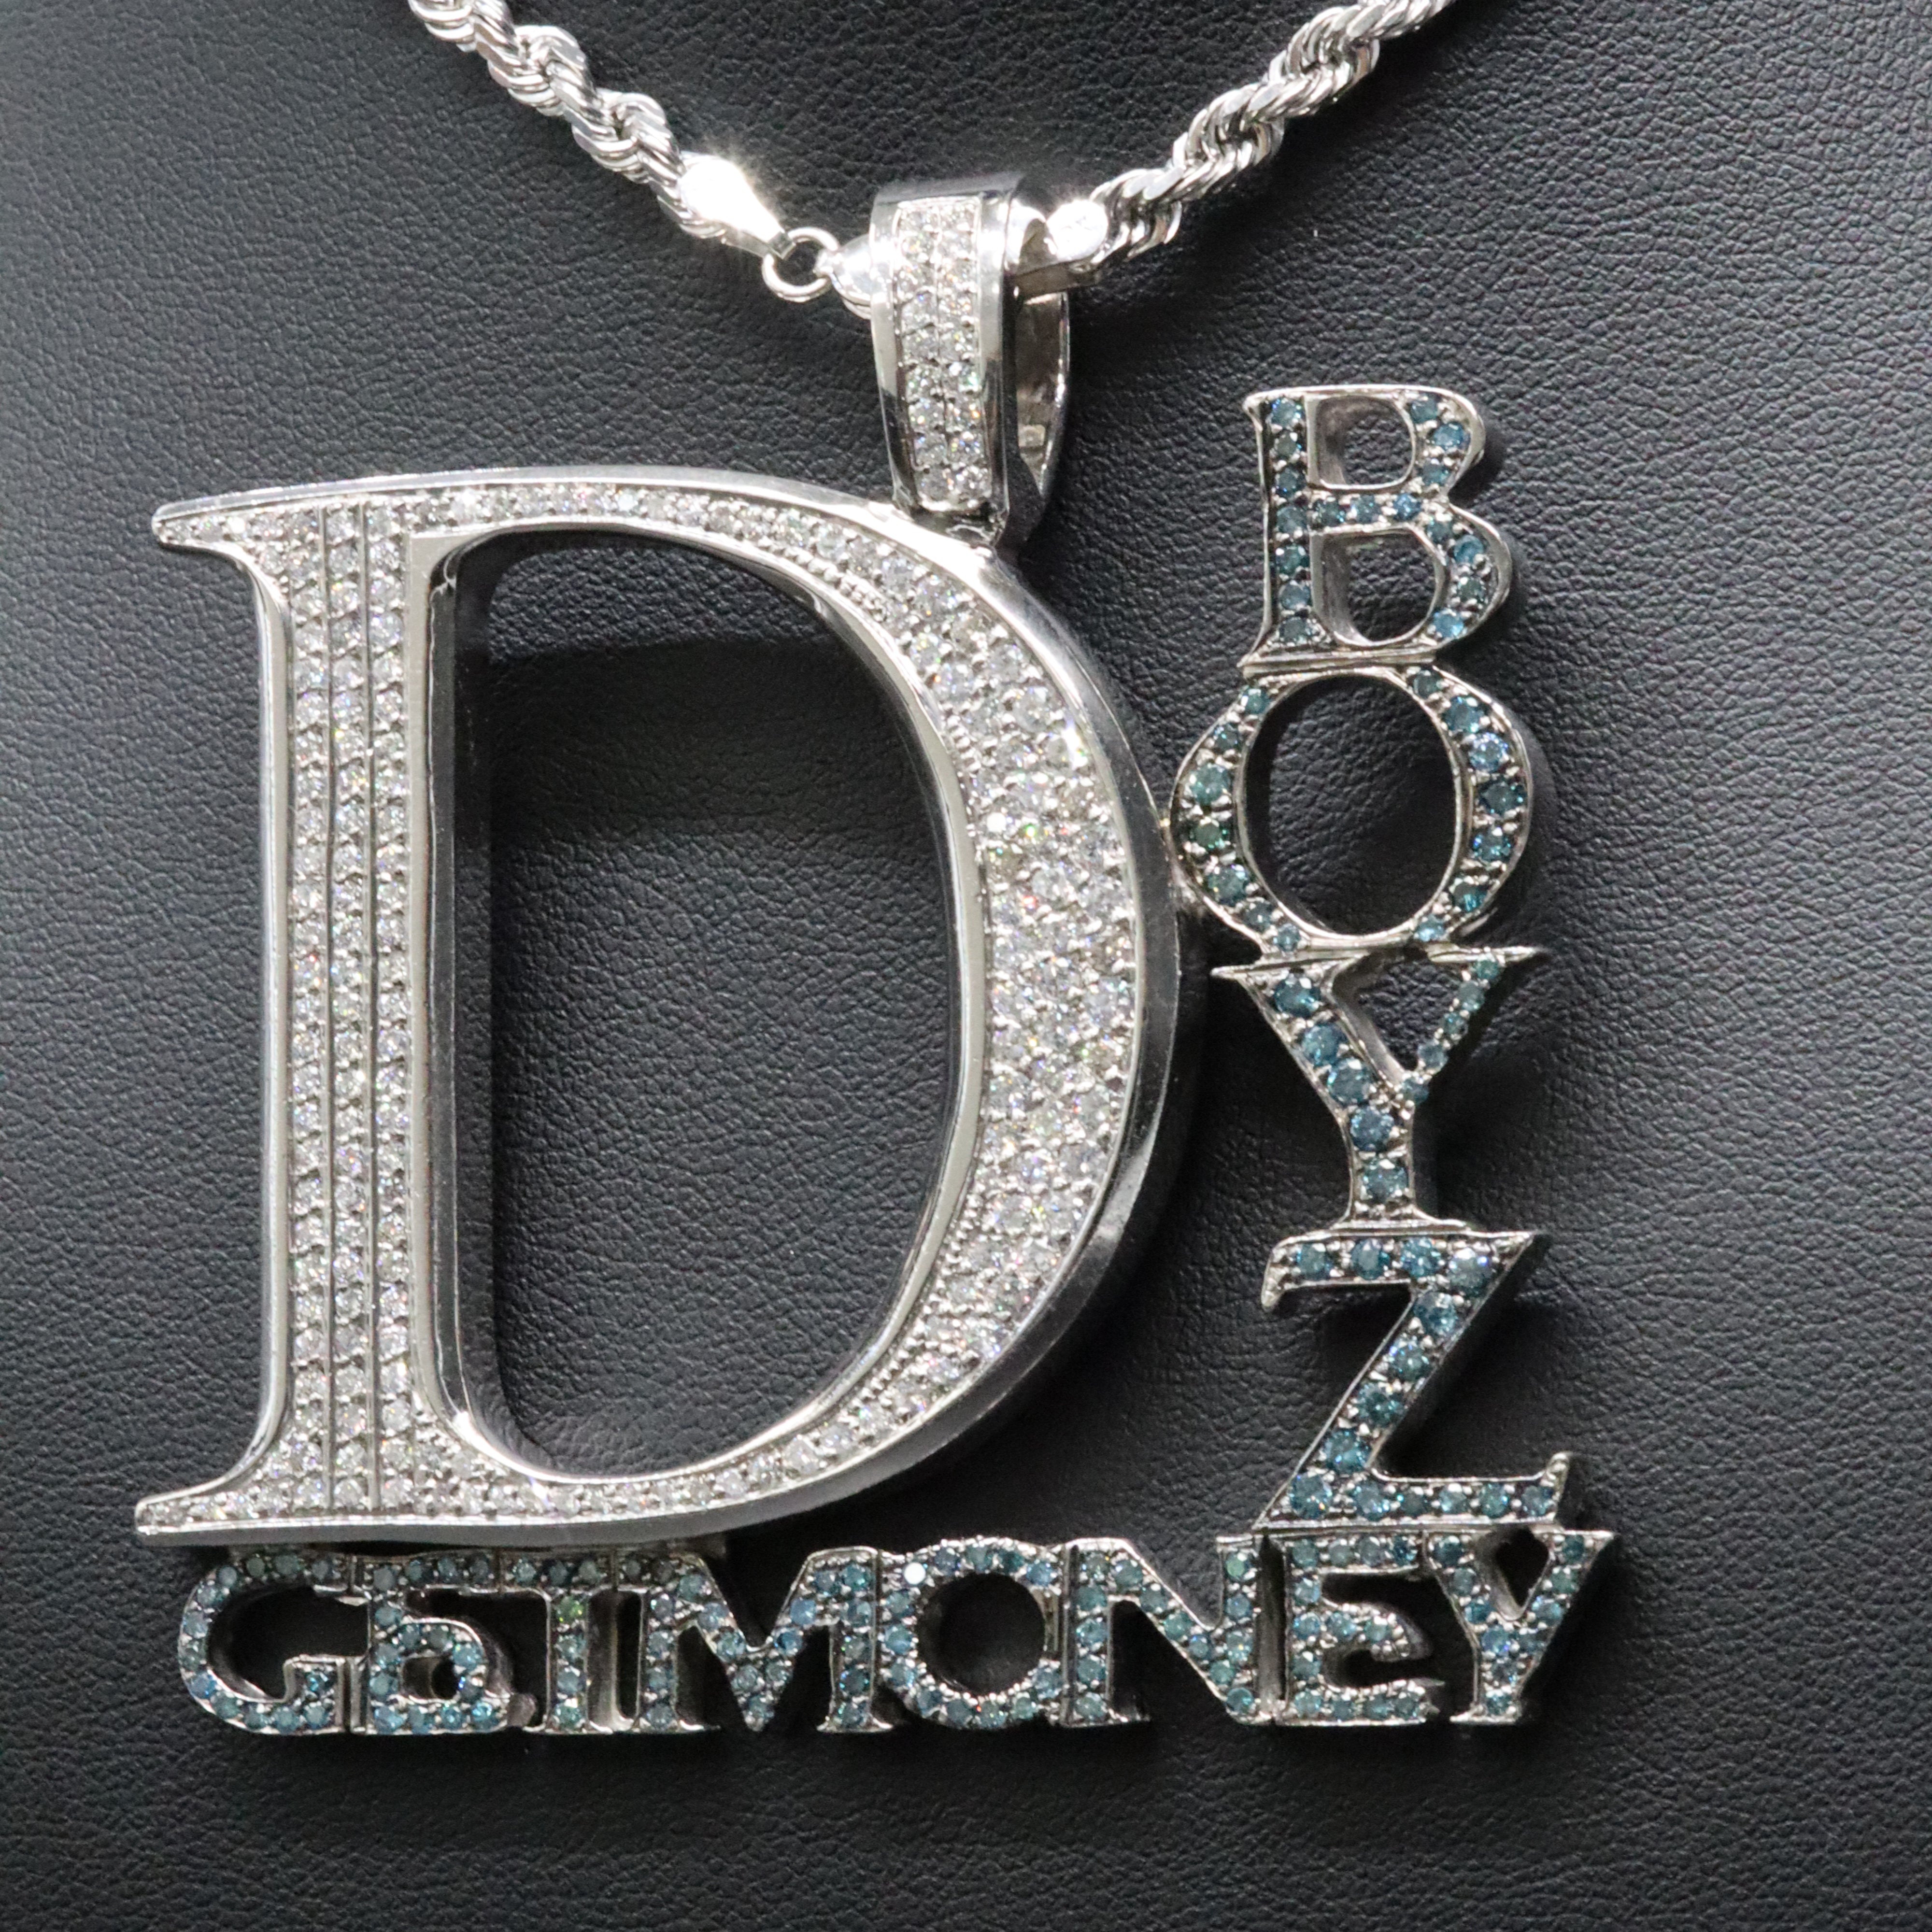 D-Boyz